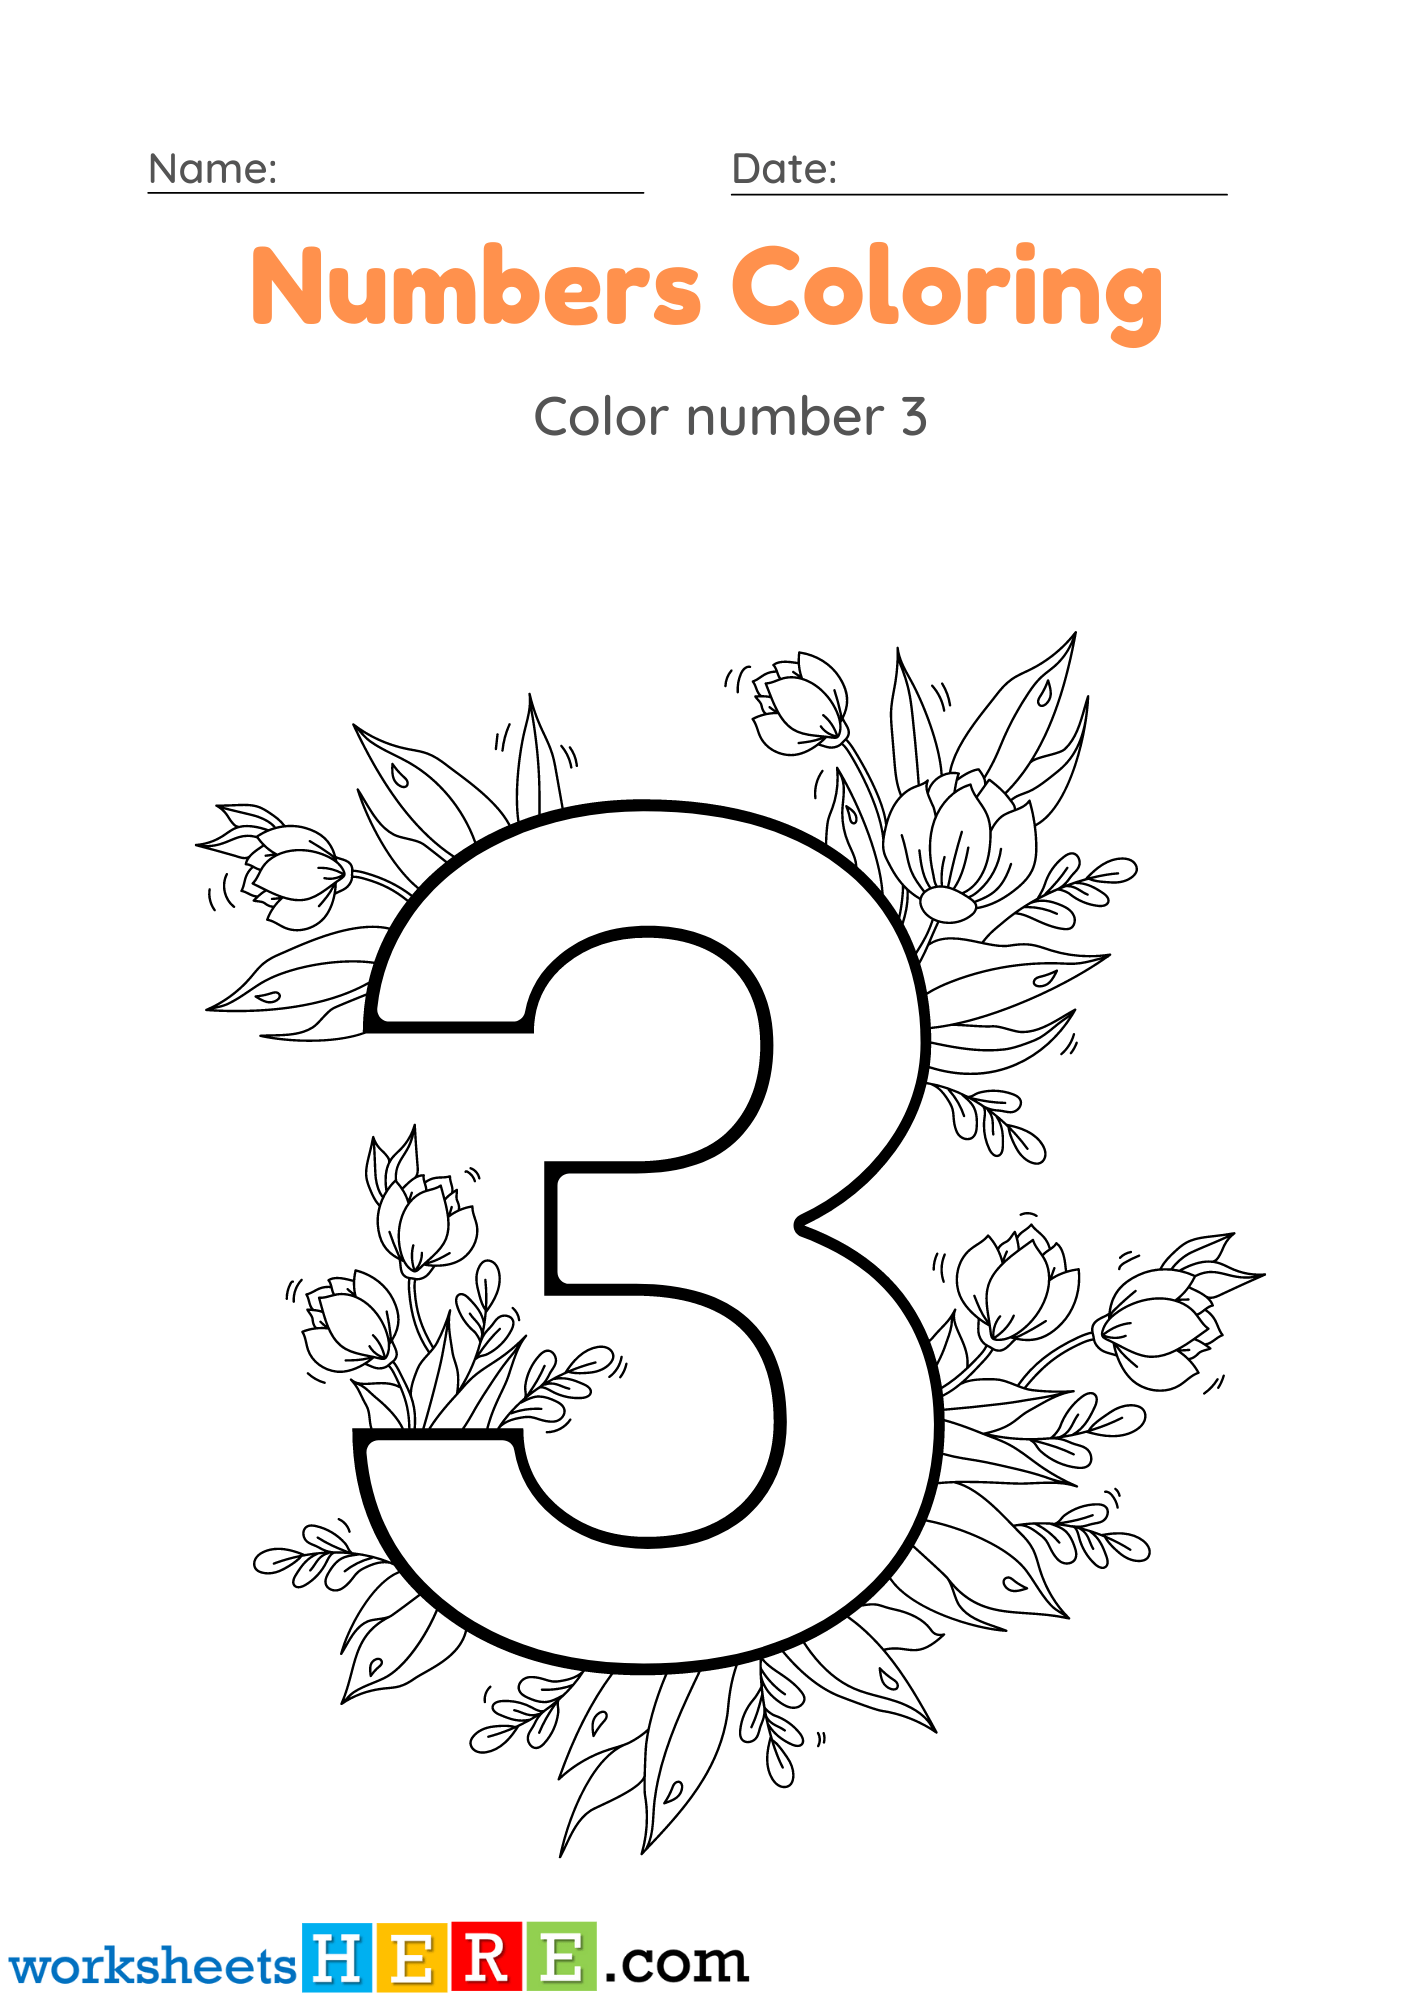 Numbers Coloring Activity, Color Number 3 PDF Worksheet For Kindergarten